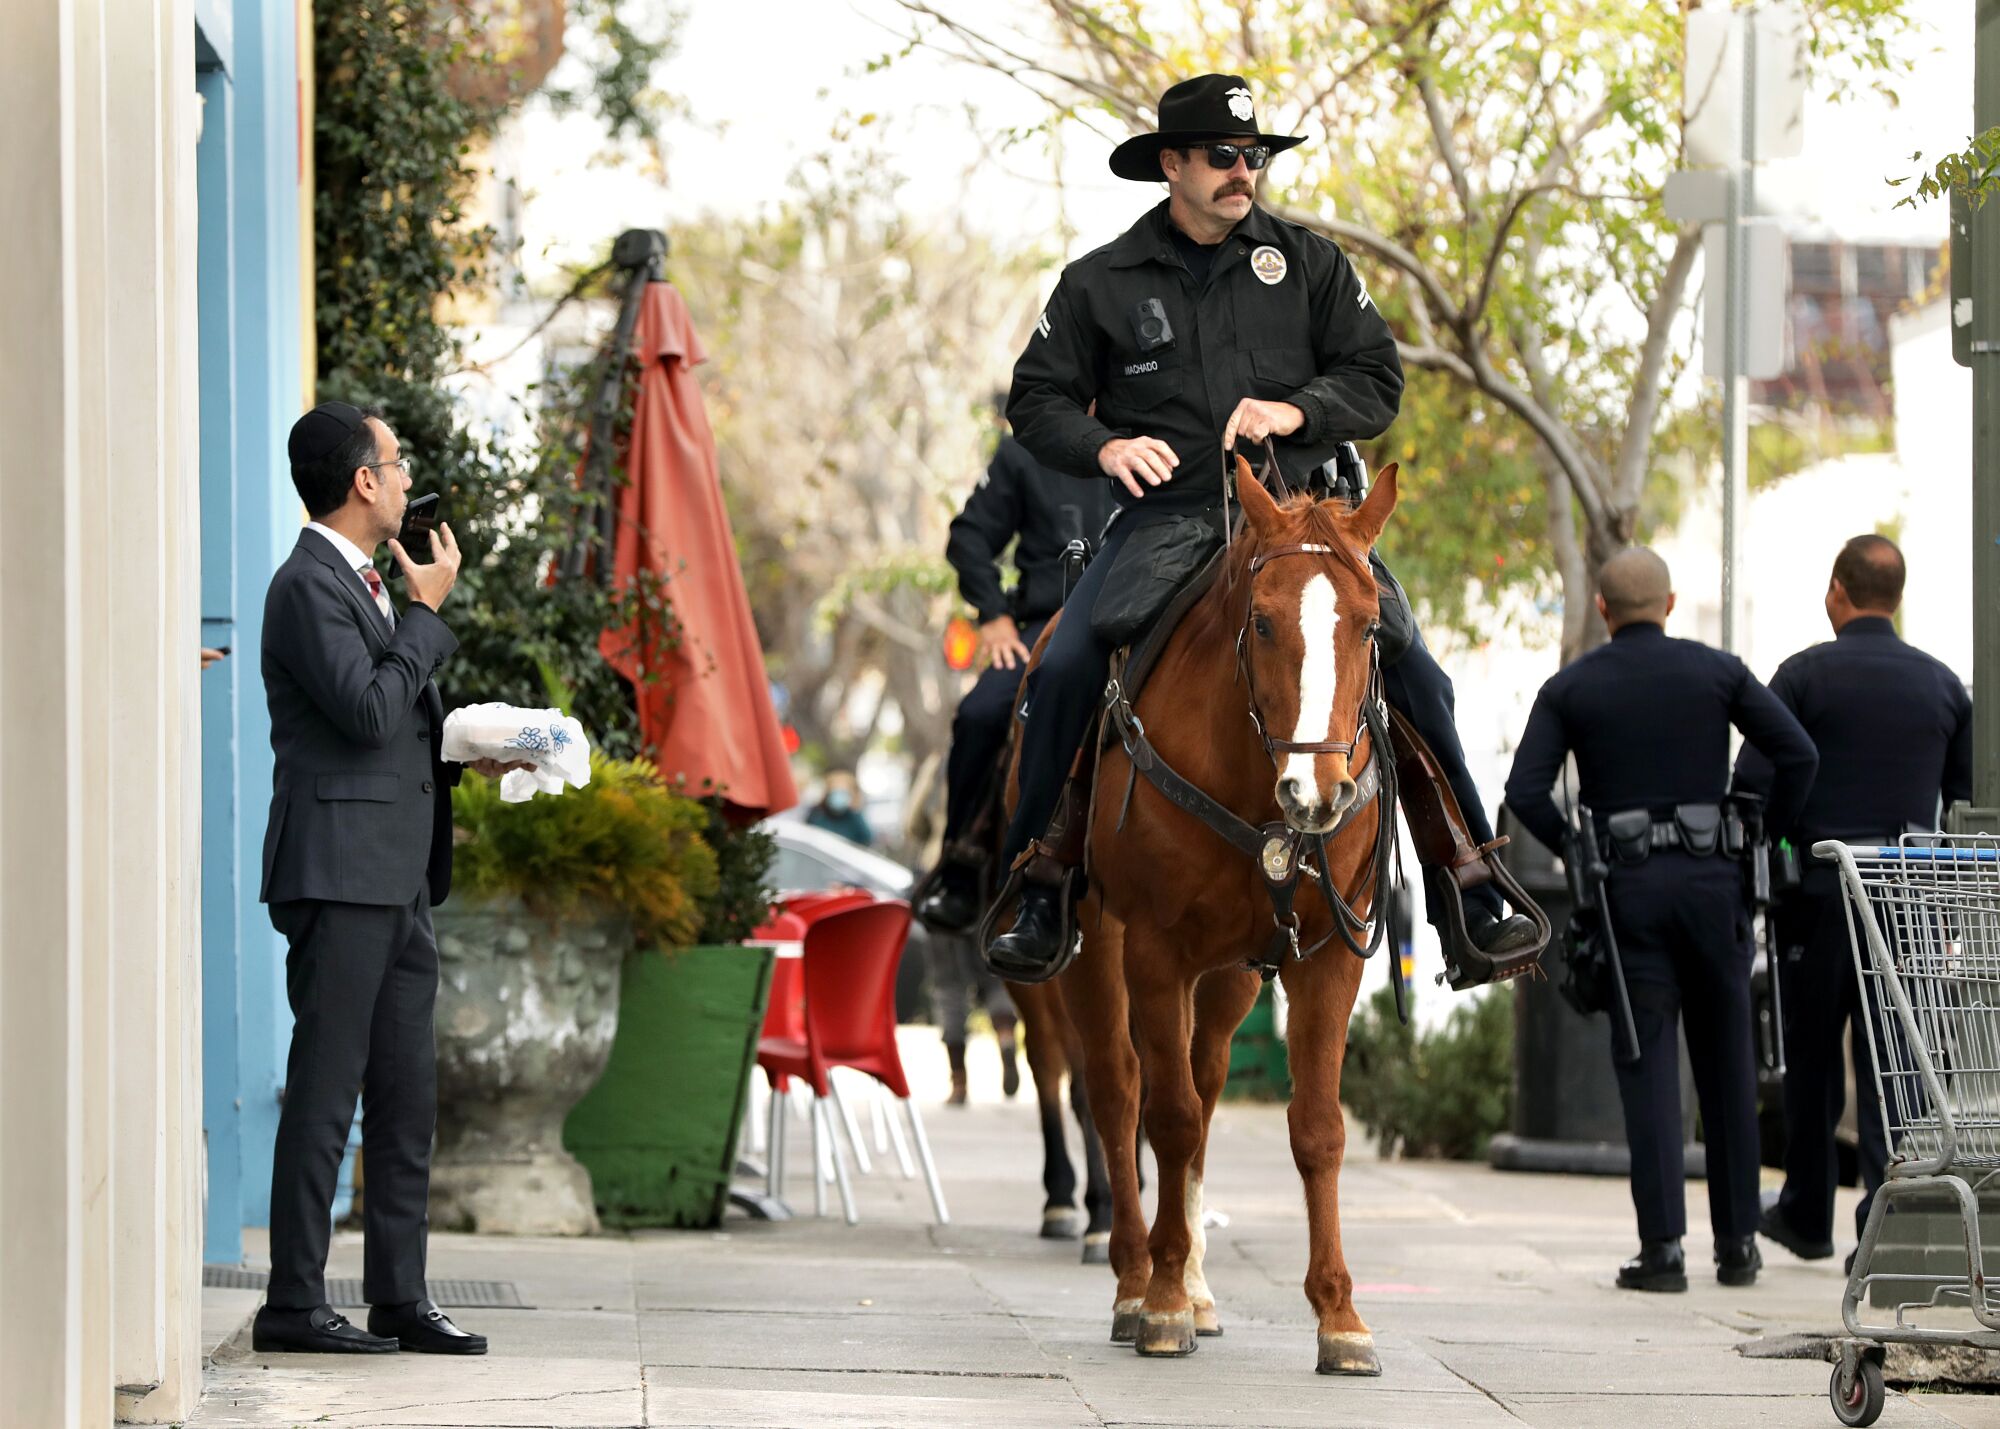 LAPD memurları, yoldan geçen biri bakarken Pico Bulvarı boyunca atlı devriye geziyor.